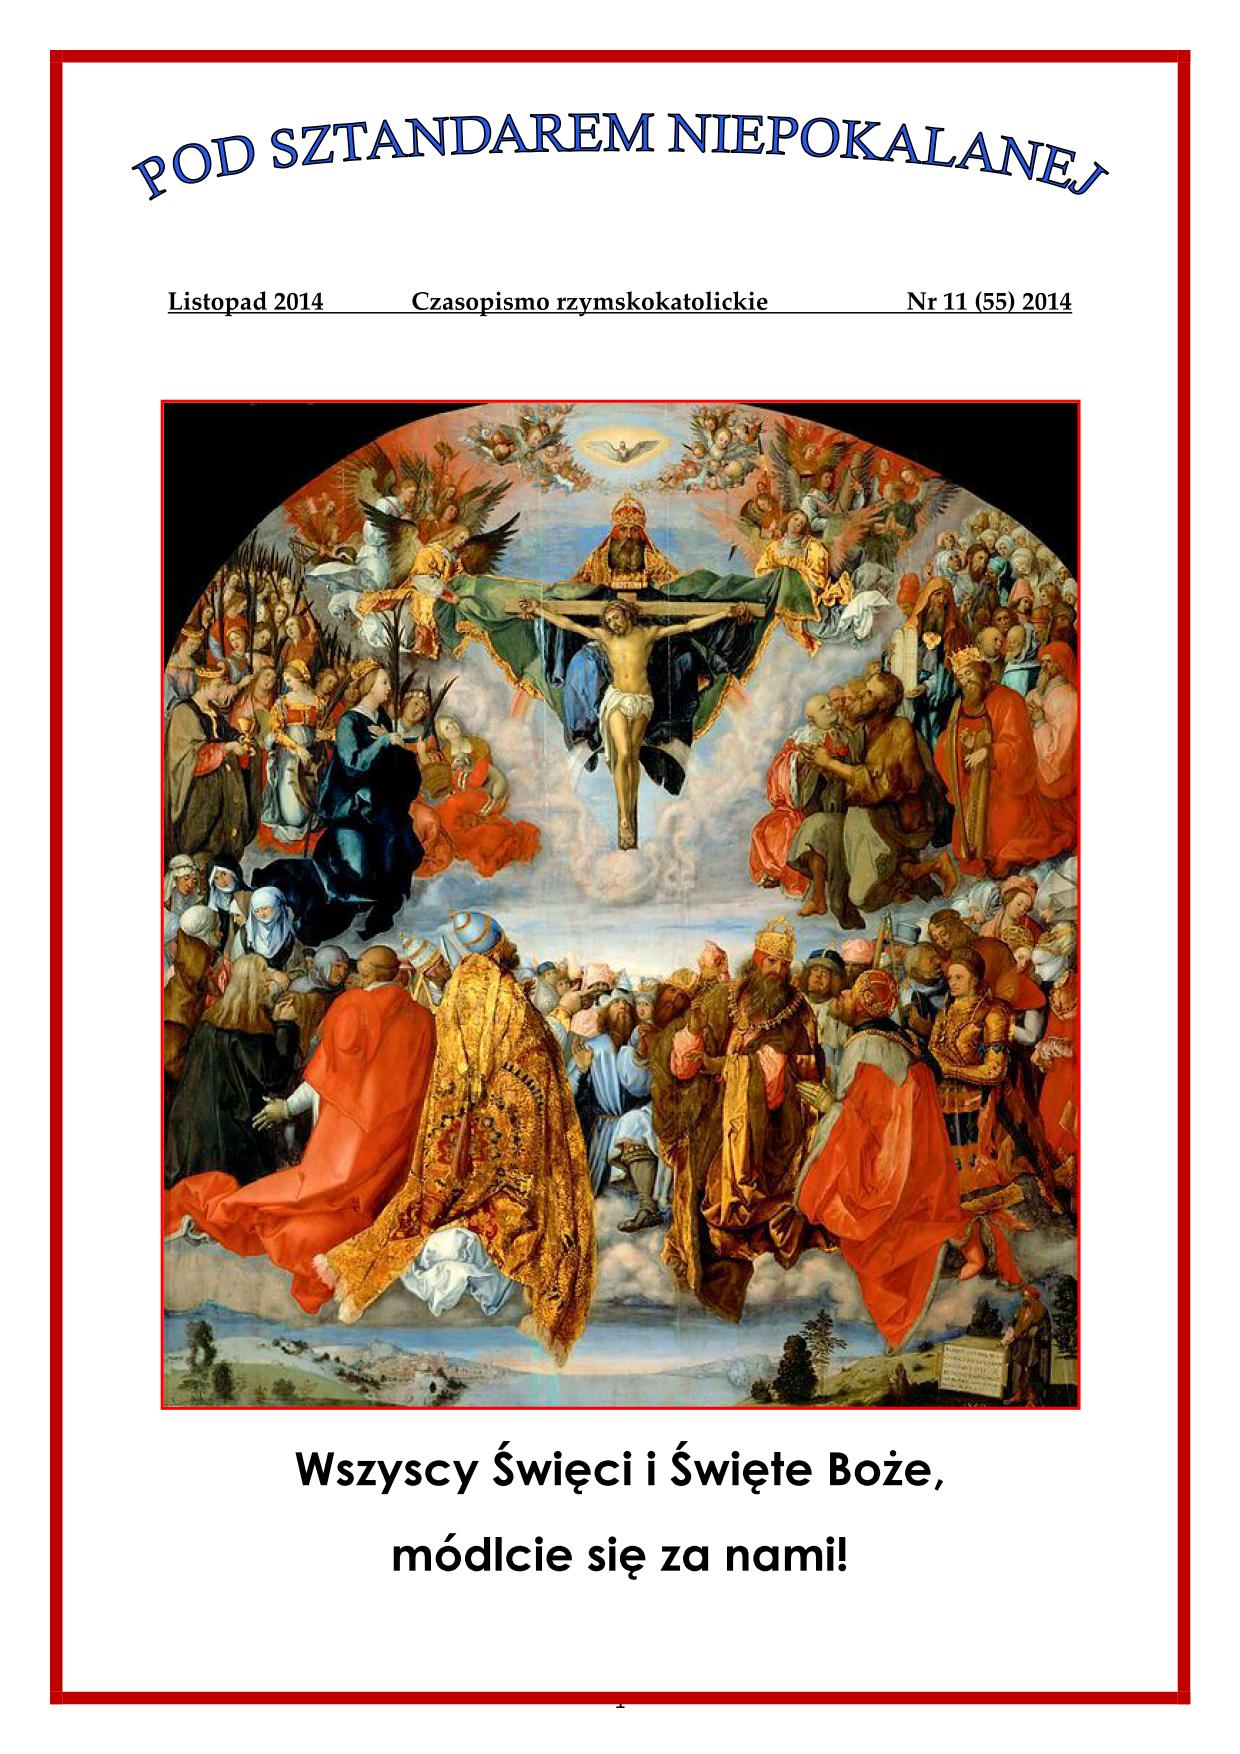 "Pod Sztandarem Niepokalanej". Nr 55. Listopad 2014. Czasopismo rzymskokatolickie.